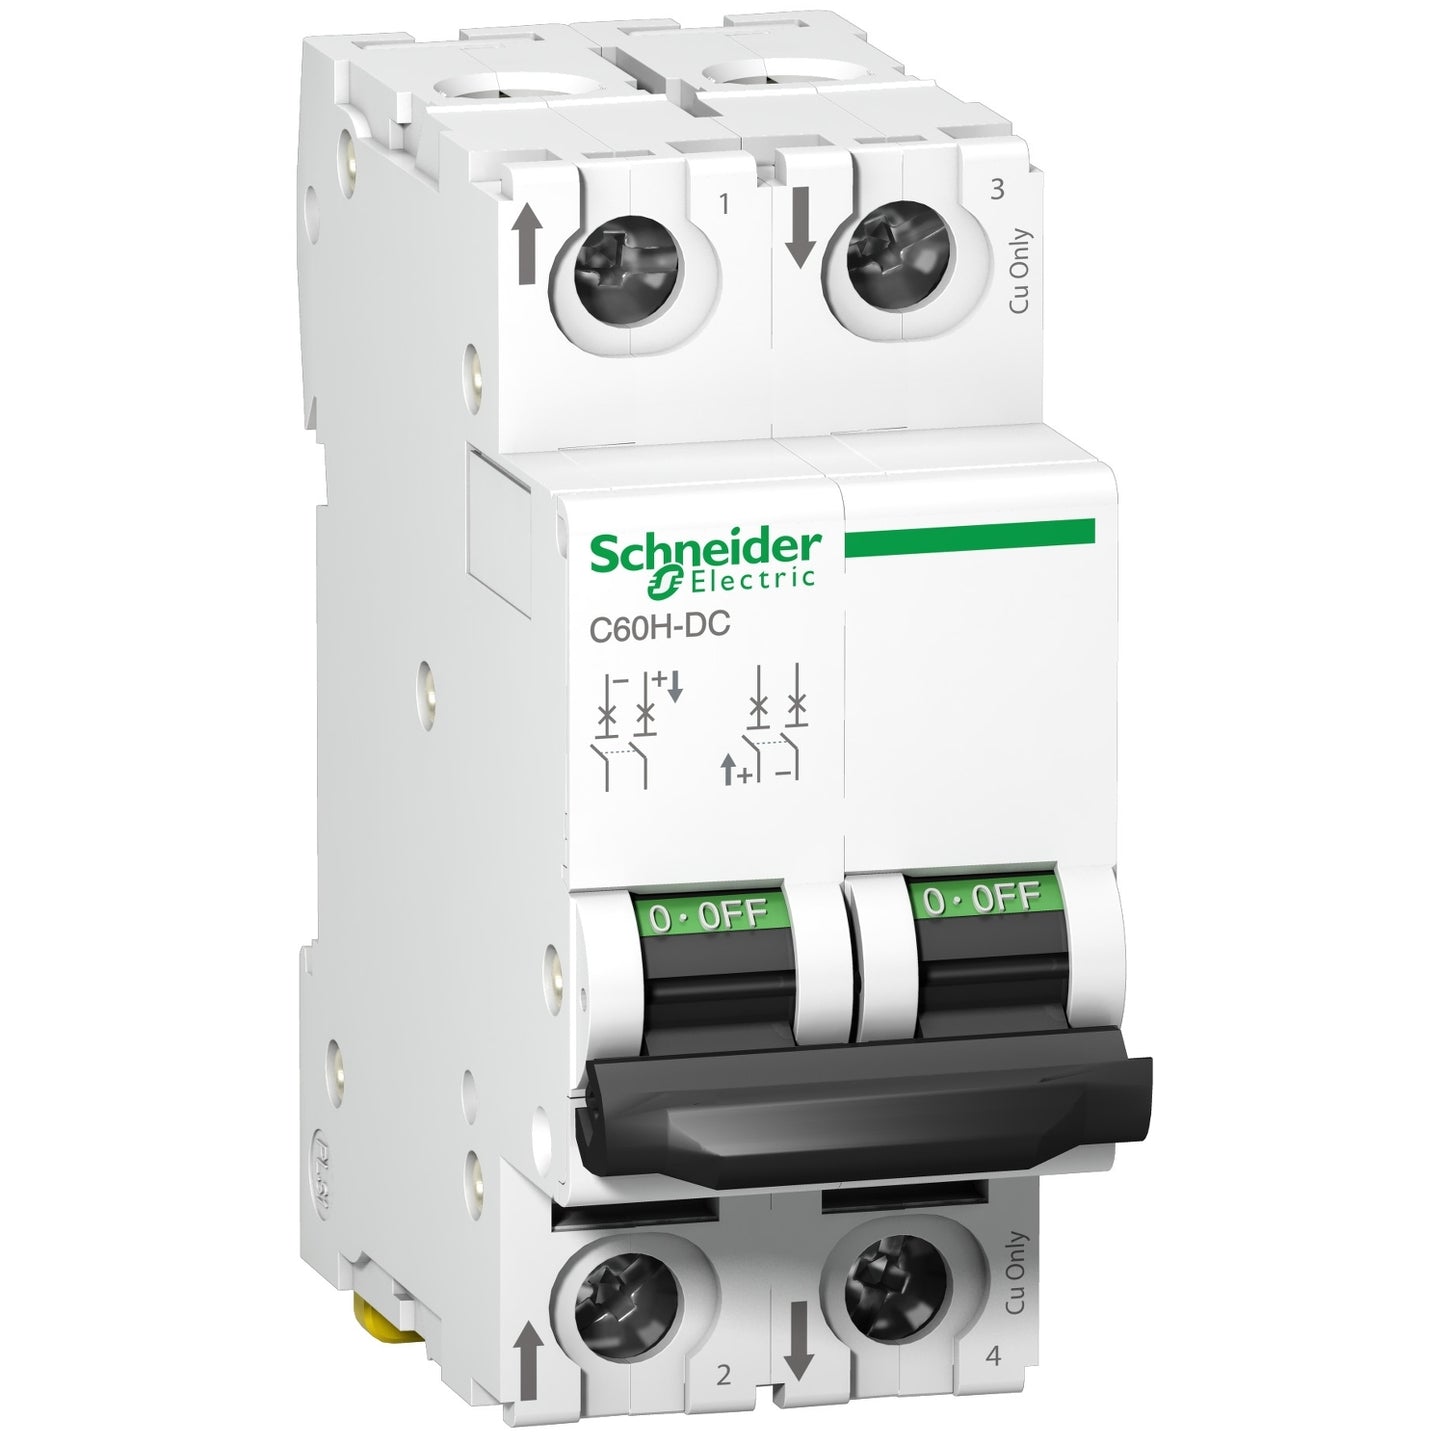 Interruptor termomagnético bipolar C60H-DC de la marca Schneider Electric con corriente nominal de veinte amperios y poder de ruptura veinte kiloamperios en doscientos veinte VDC. El código de referencia es A9N61532.